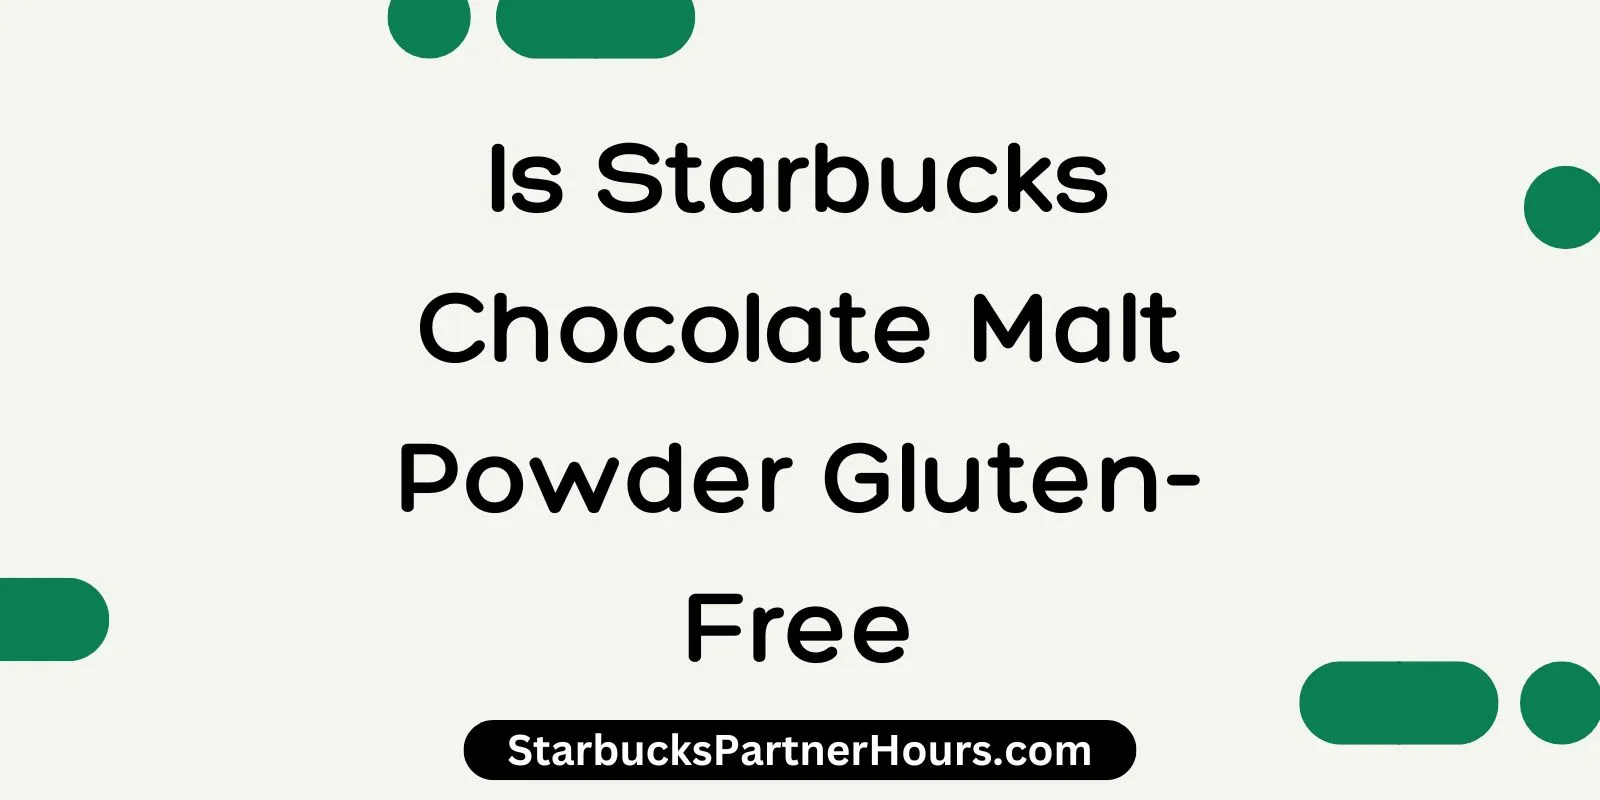 Is Starbucks Chocolate Malt Powder Gluten-Free